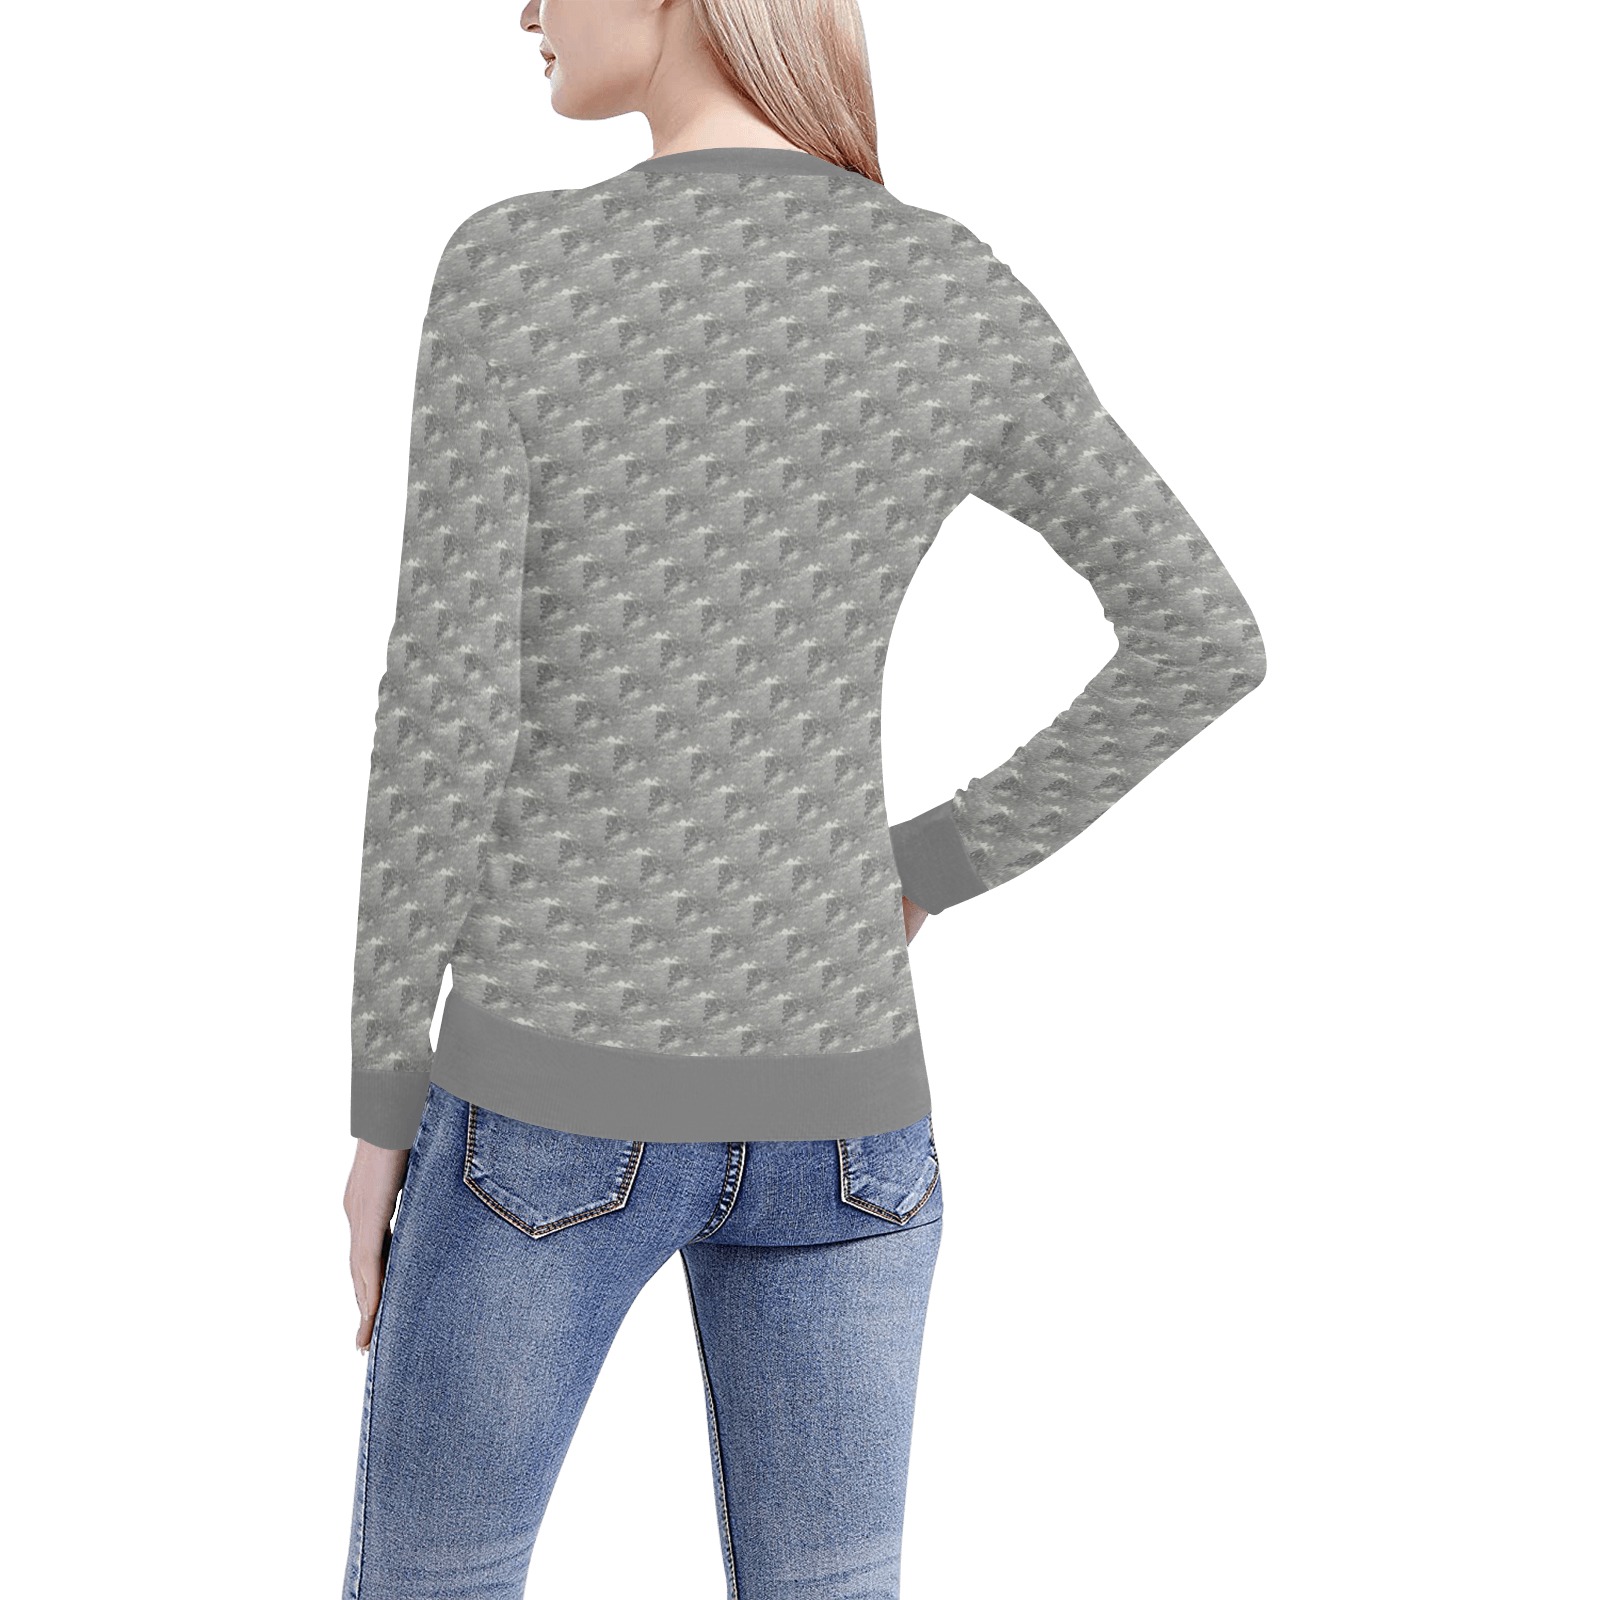 Gray Water Splashes Women's All Over Print V-Neck Sweater (Model H48)